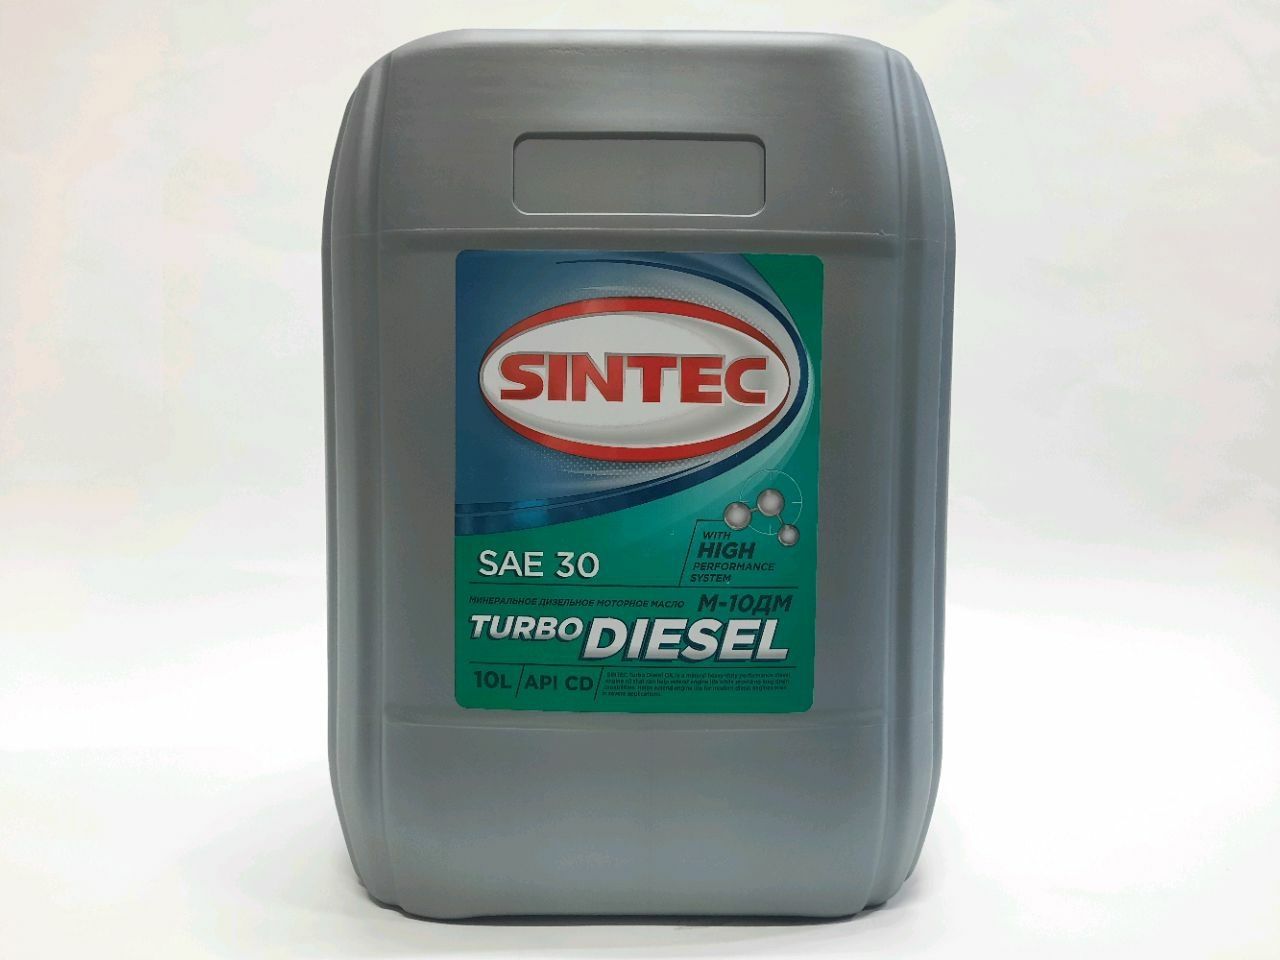 Sintec Turbo Diesel М-10ДМ 10l.